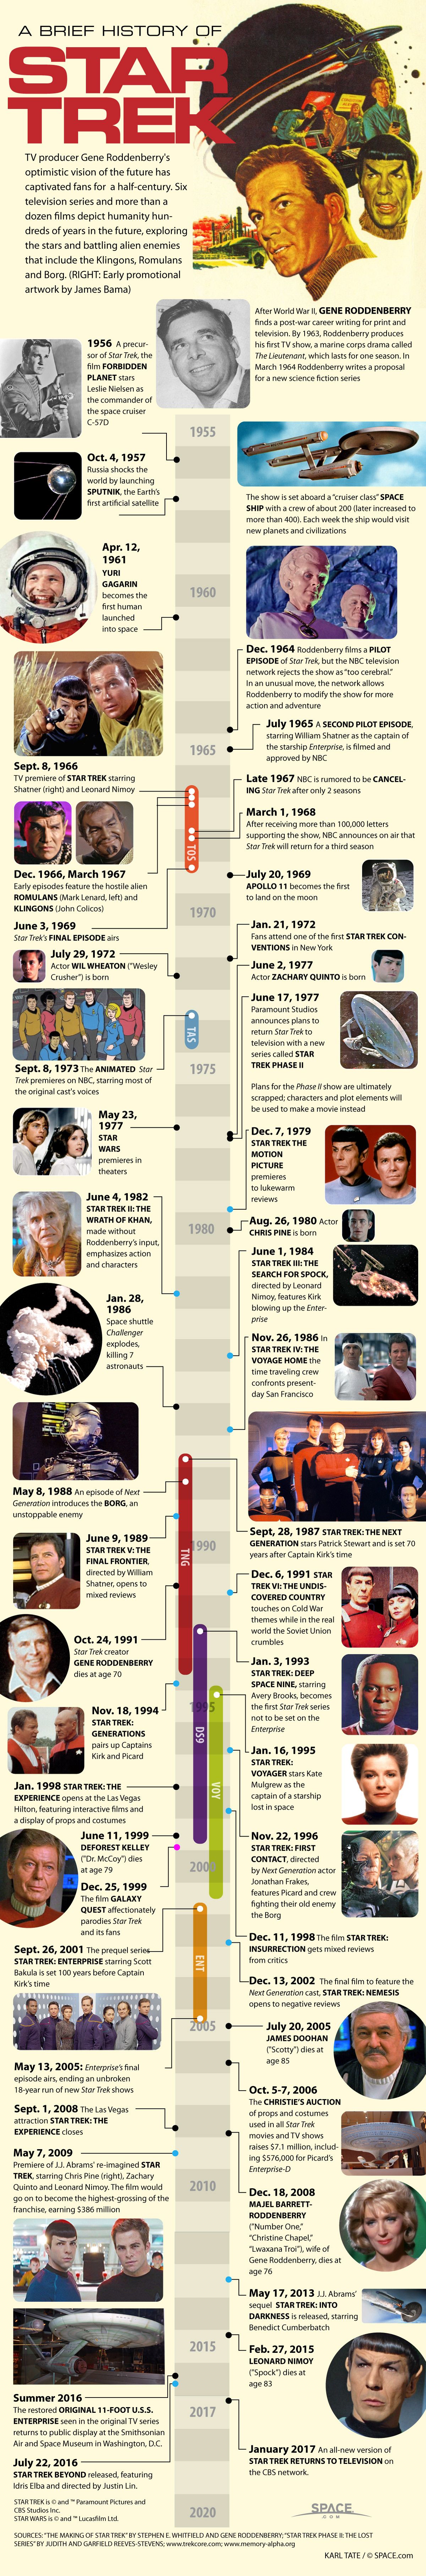 star trek timeline infographic